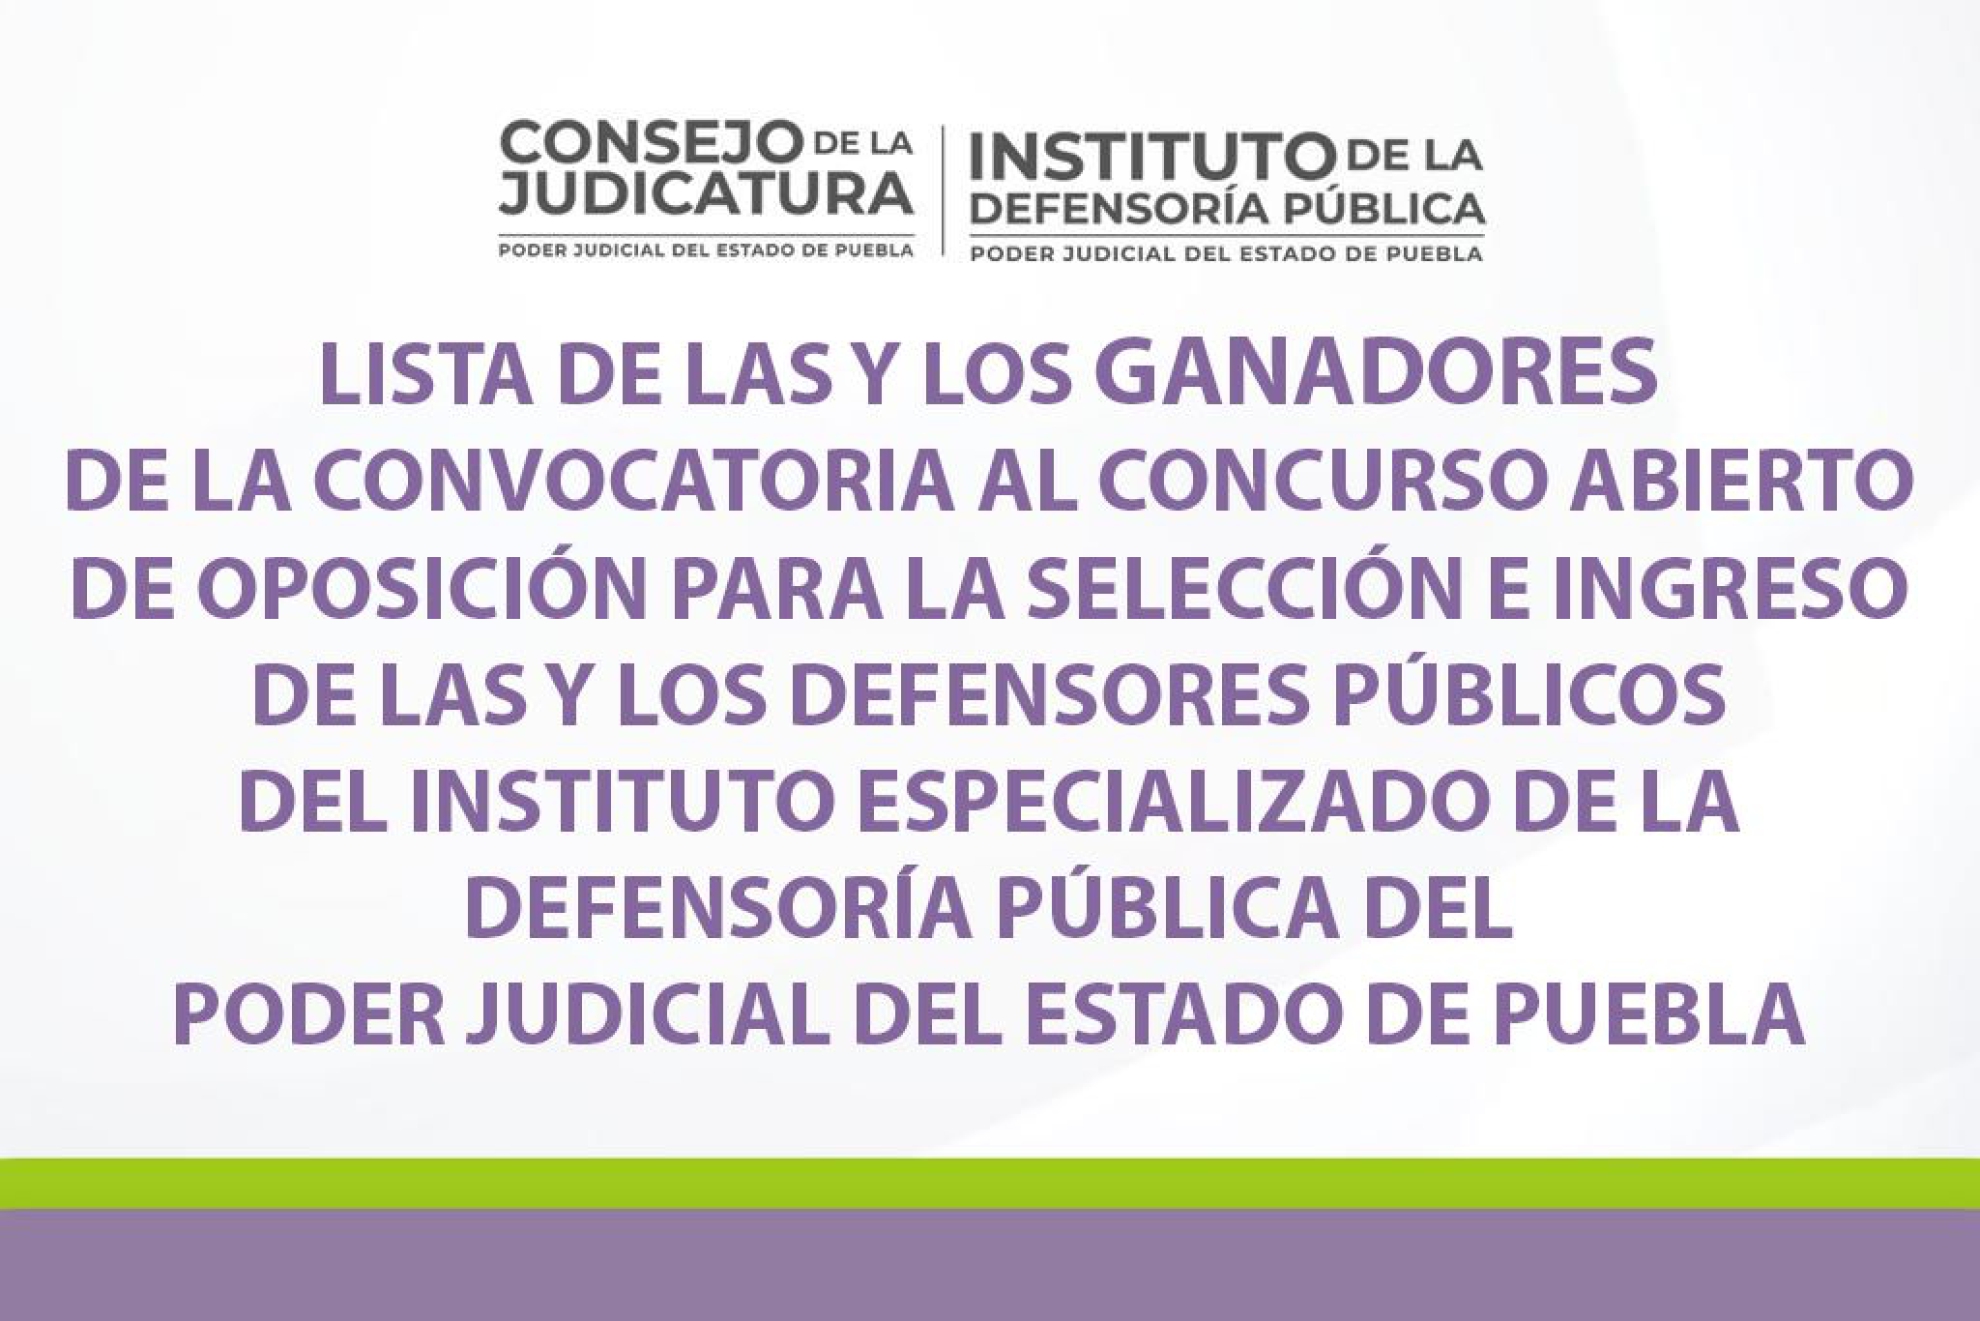 LISTA DE GANADORES de la convocatoria al concurso abierto de oposición para la sección e ingreso de las y los defensores públicos